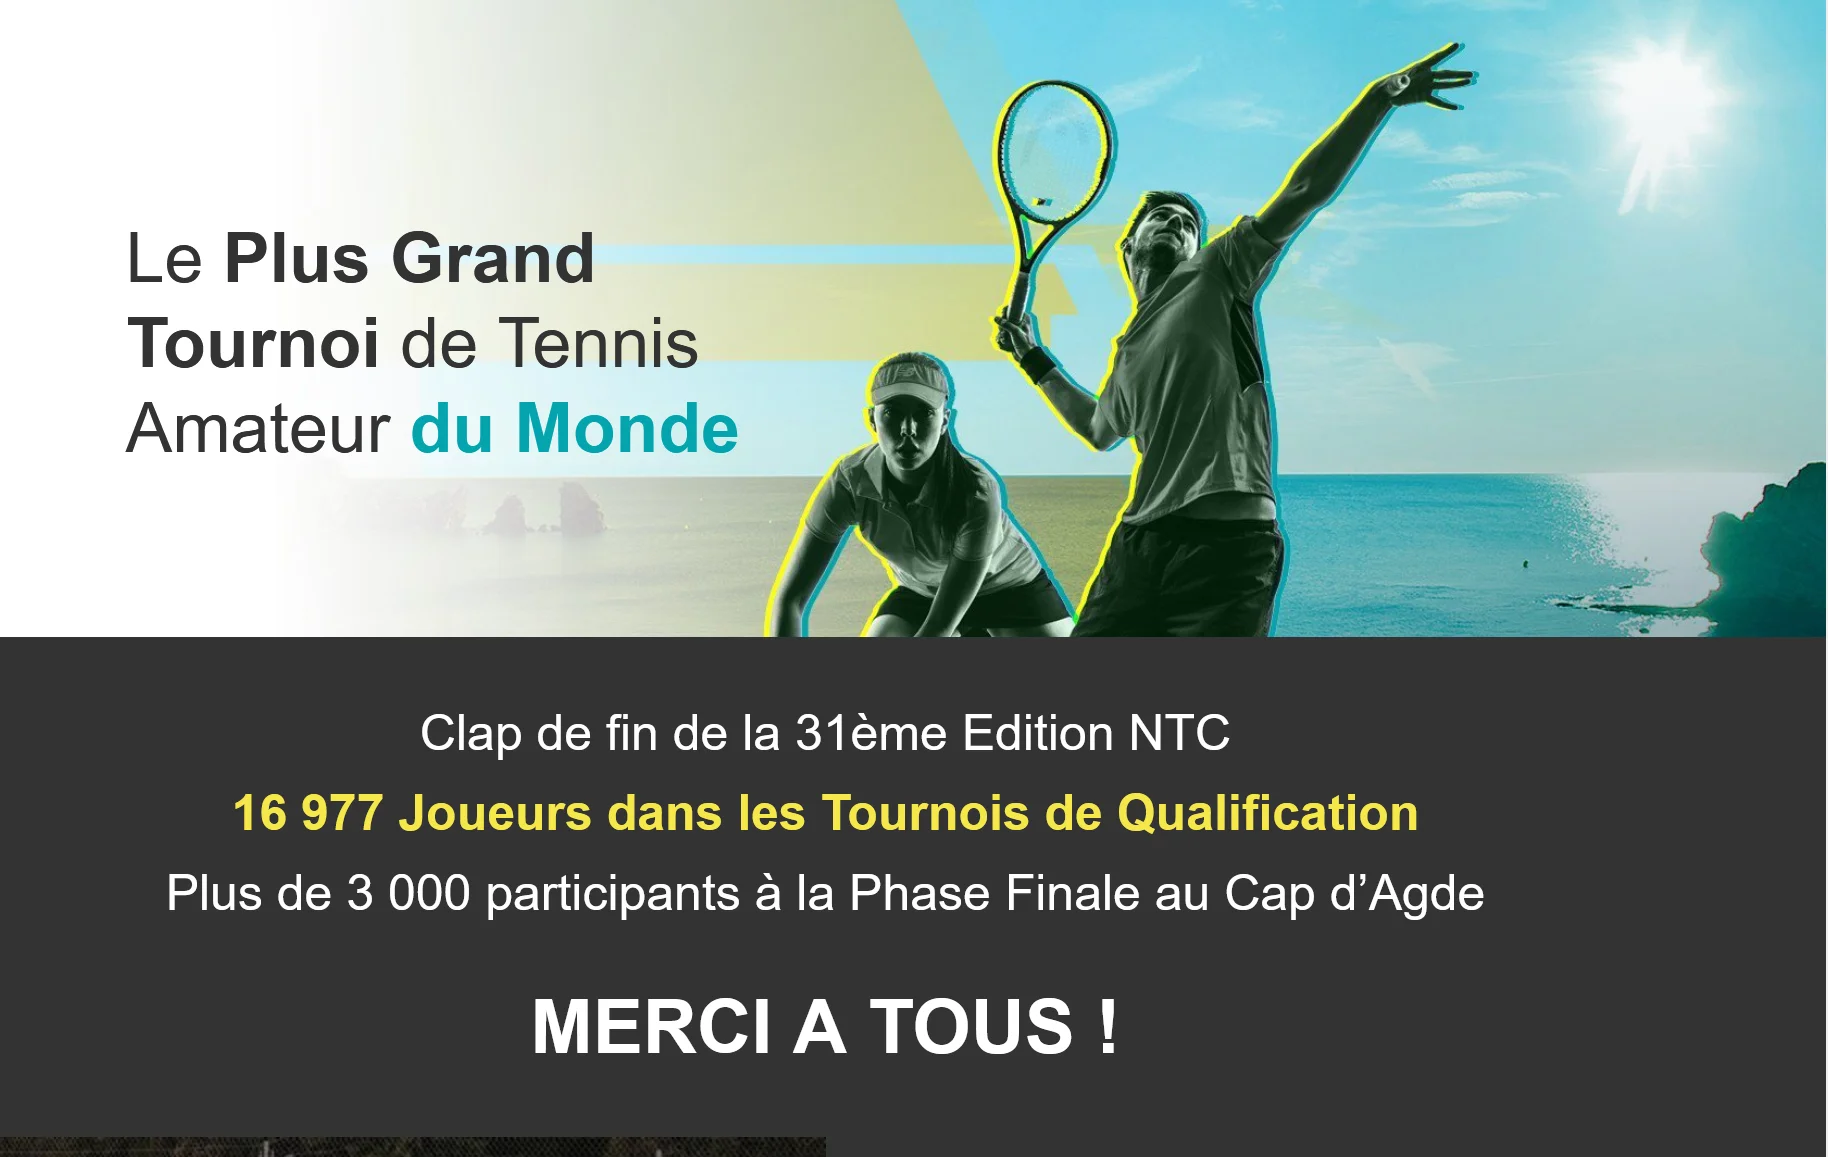 La National Tennis Cup : Le Plus Grand Tournoi de Tennis Amateur du Monde